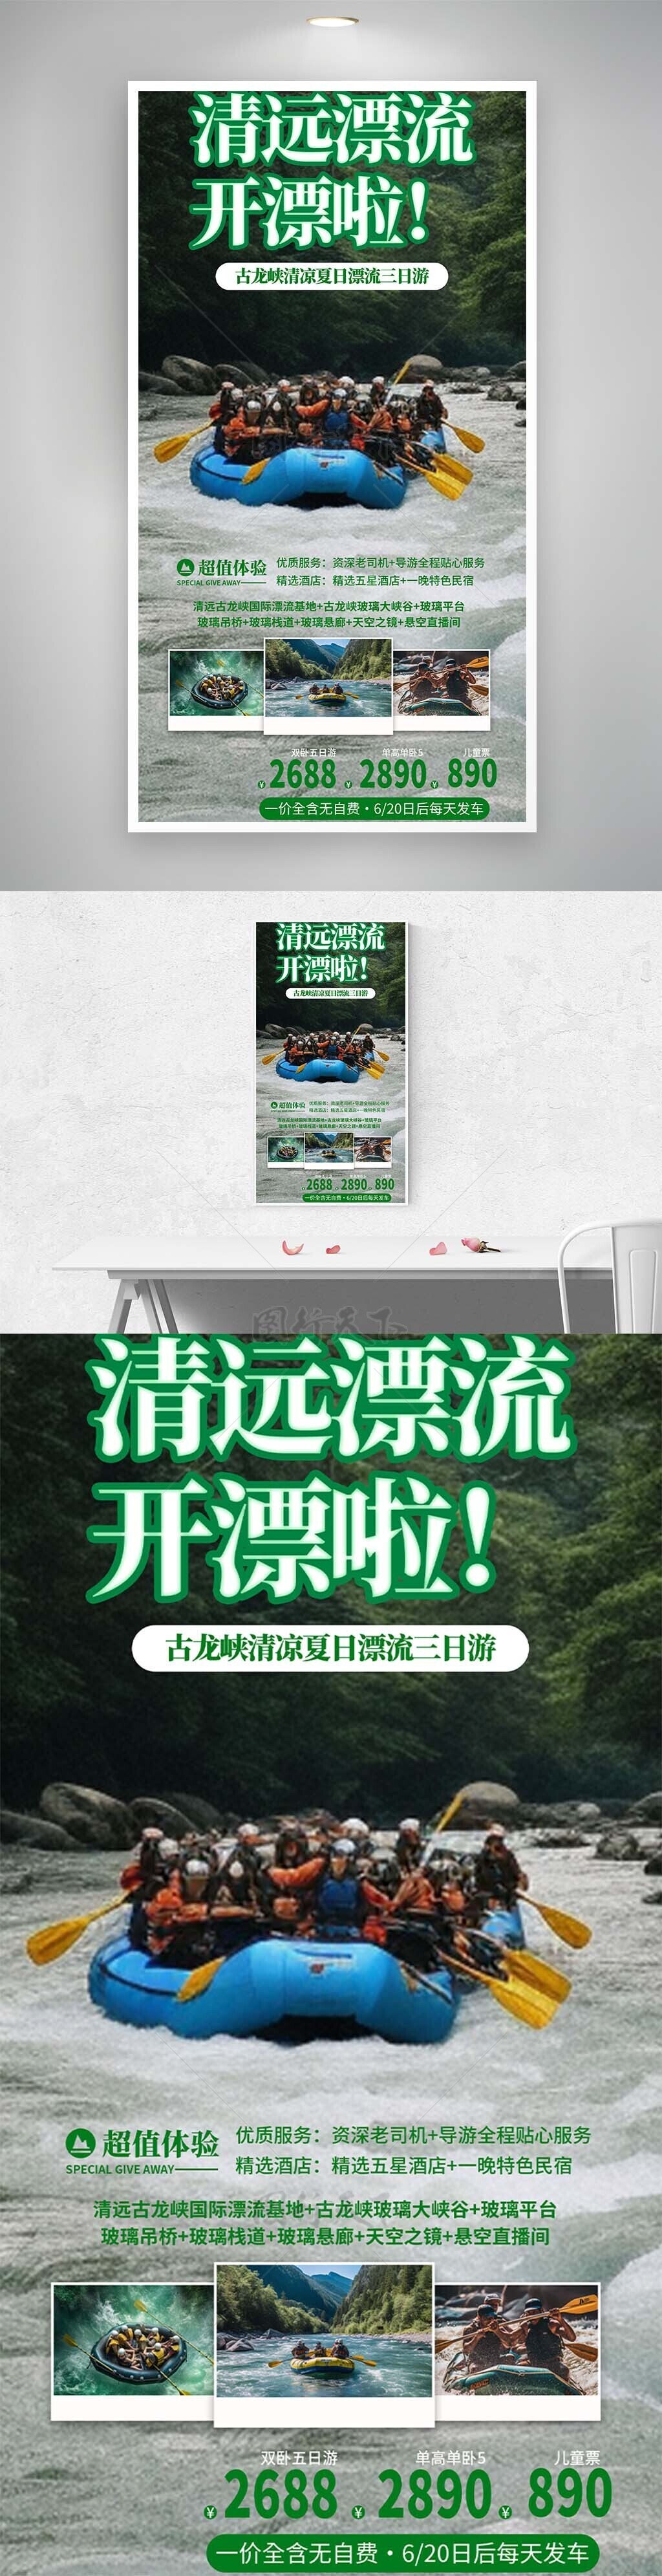 清凉夏日漂流三日游主题宣传海报